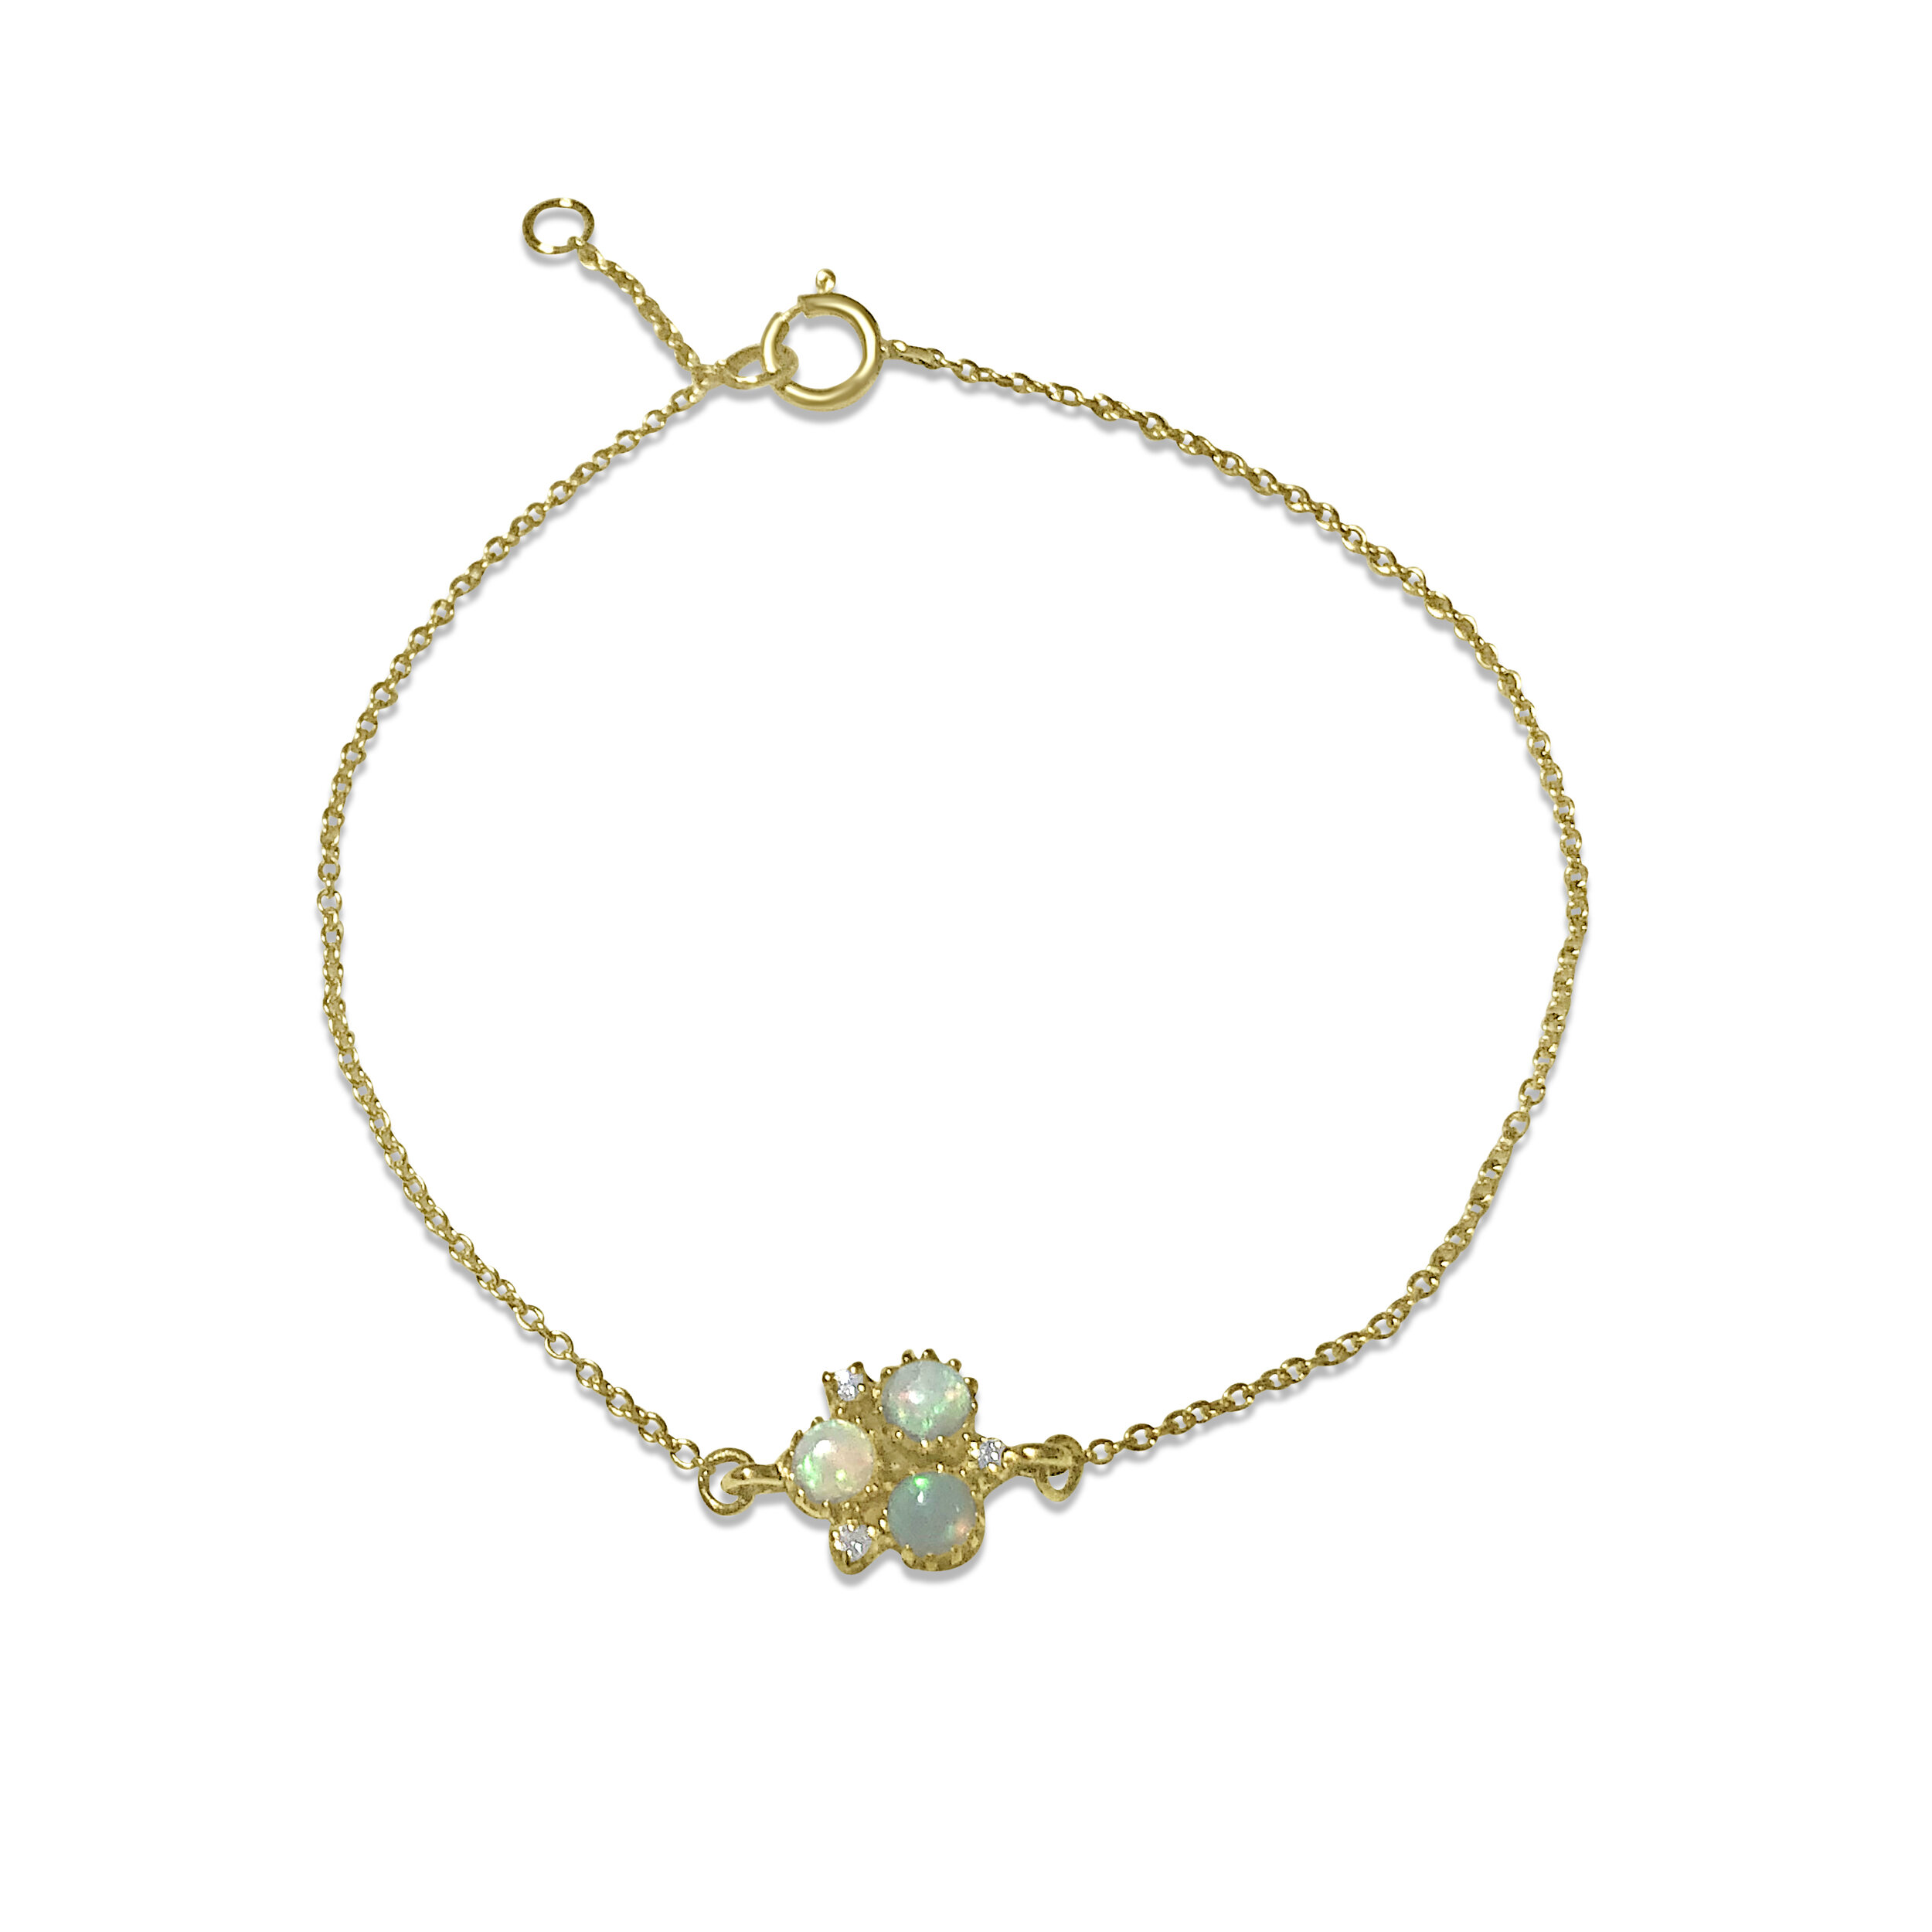 Atelier All Day 14K Opal Jewelry : Opal and Diamond Trio Chain Bracelet $575